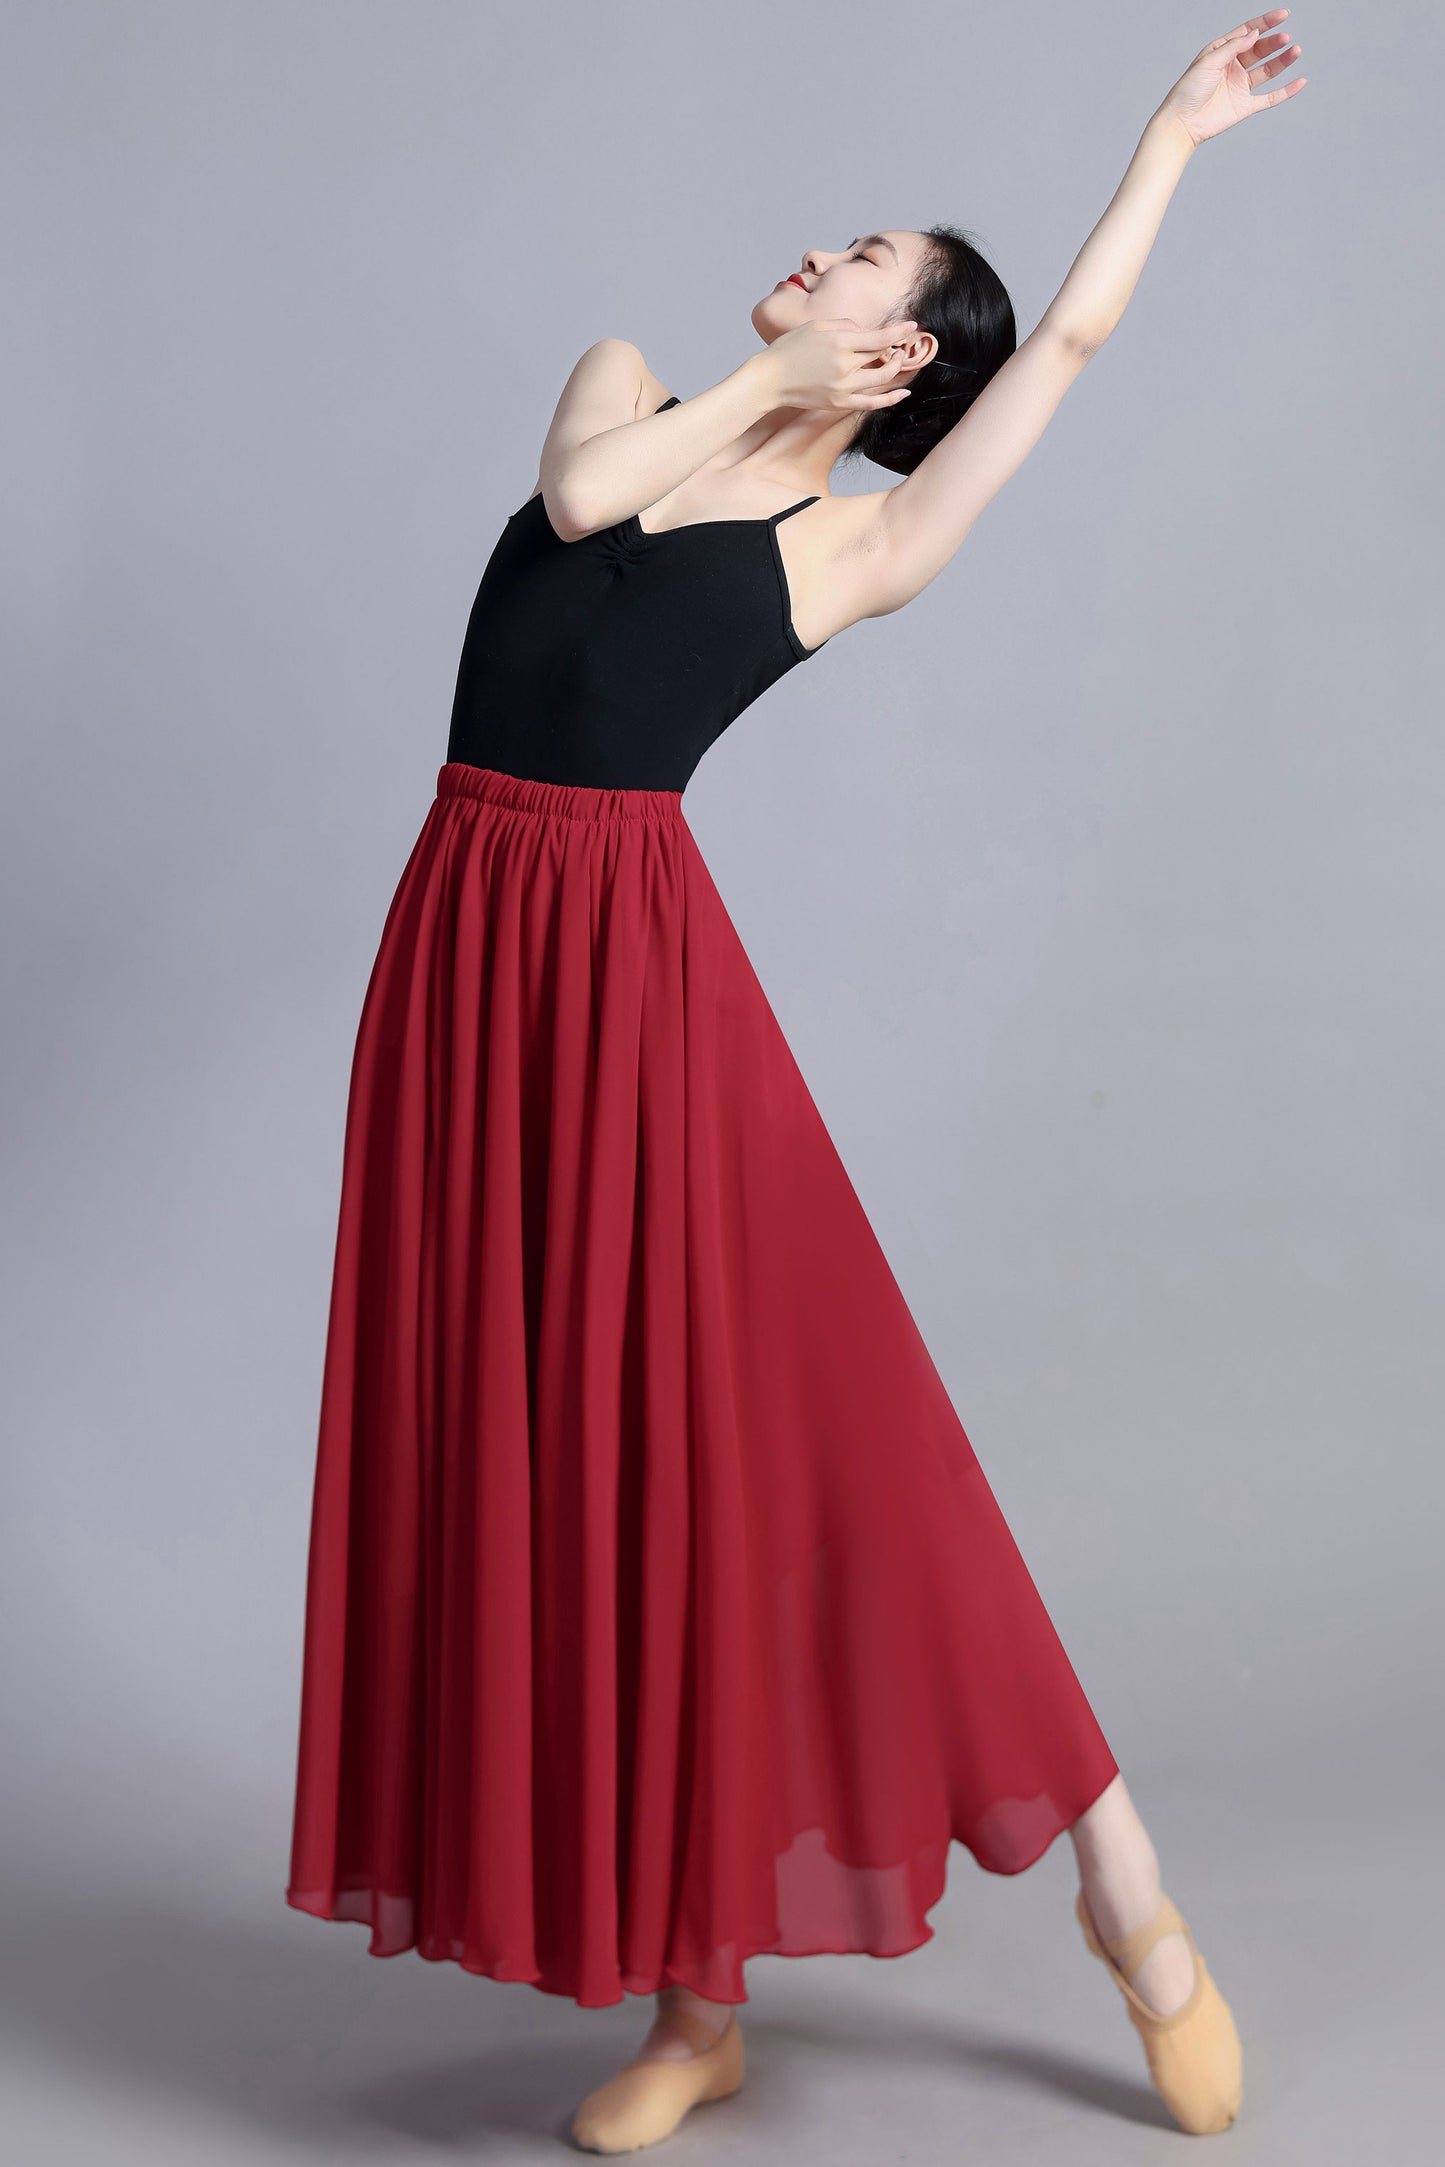 Summer dance skirt, bohemian Chiffon skirt, Plus size skirt 3388